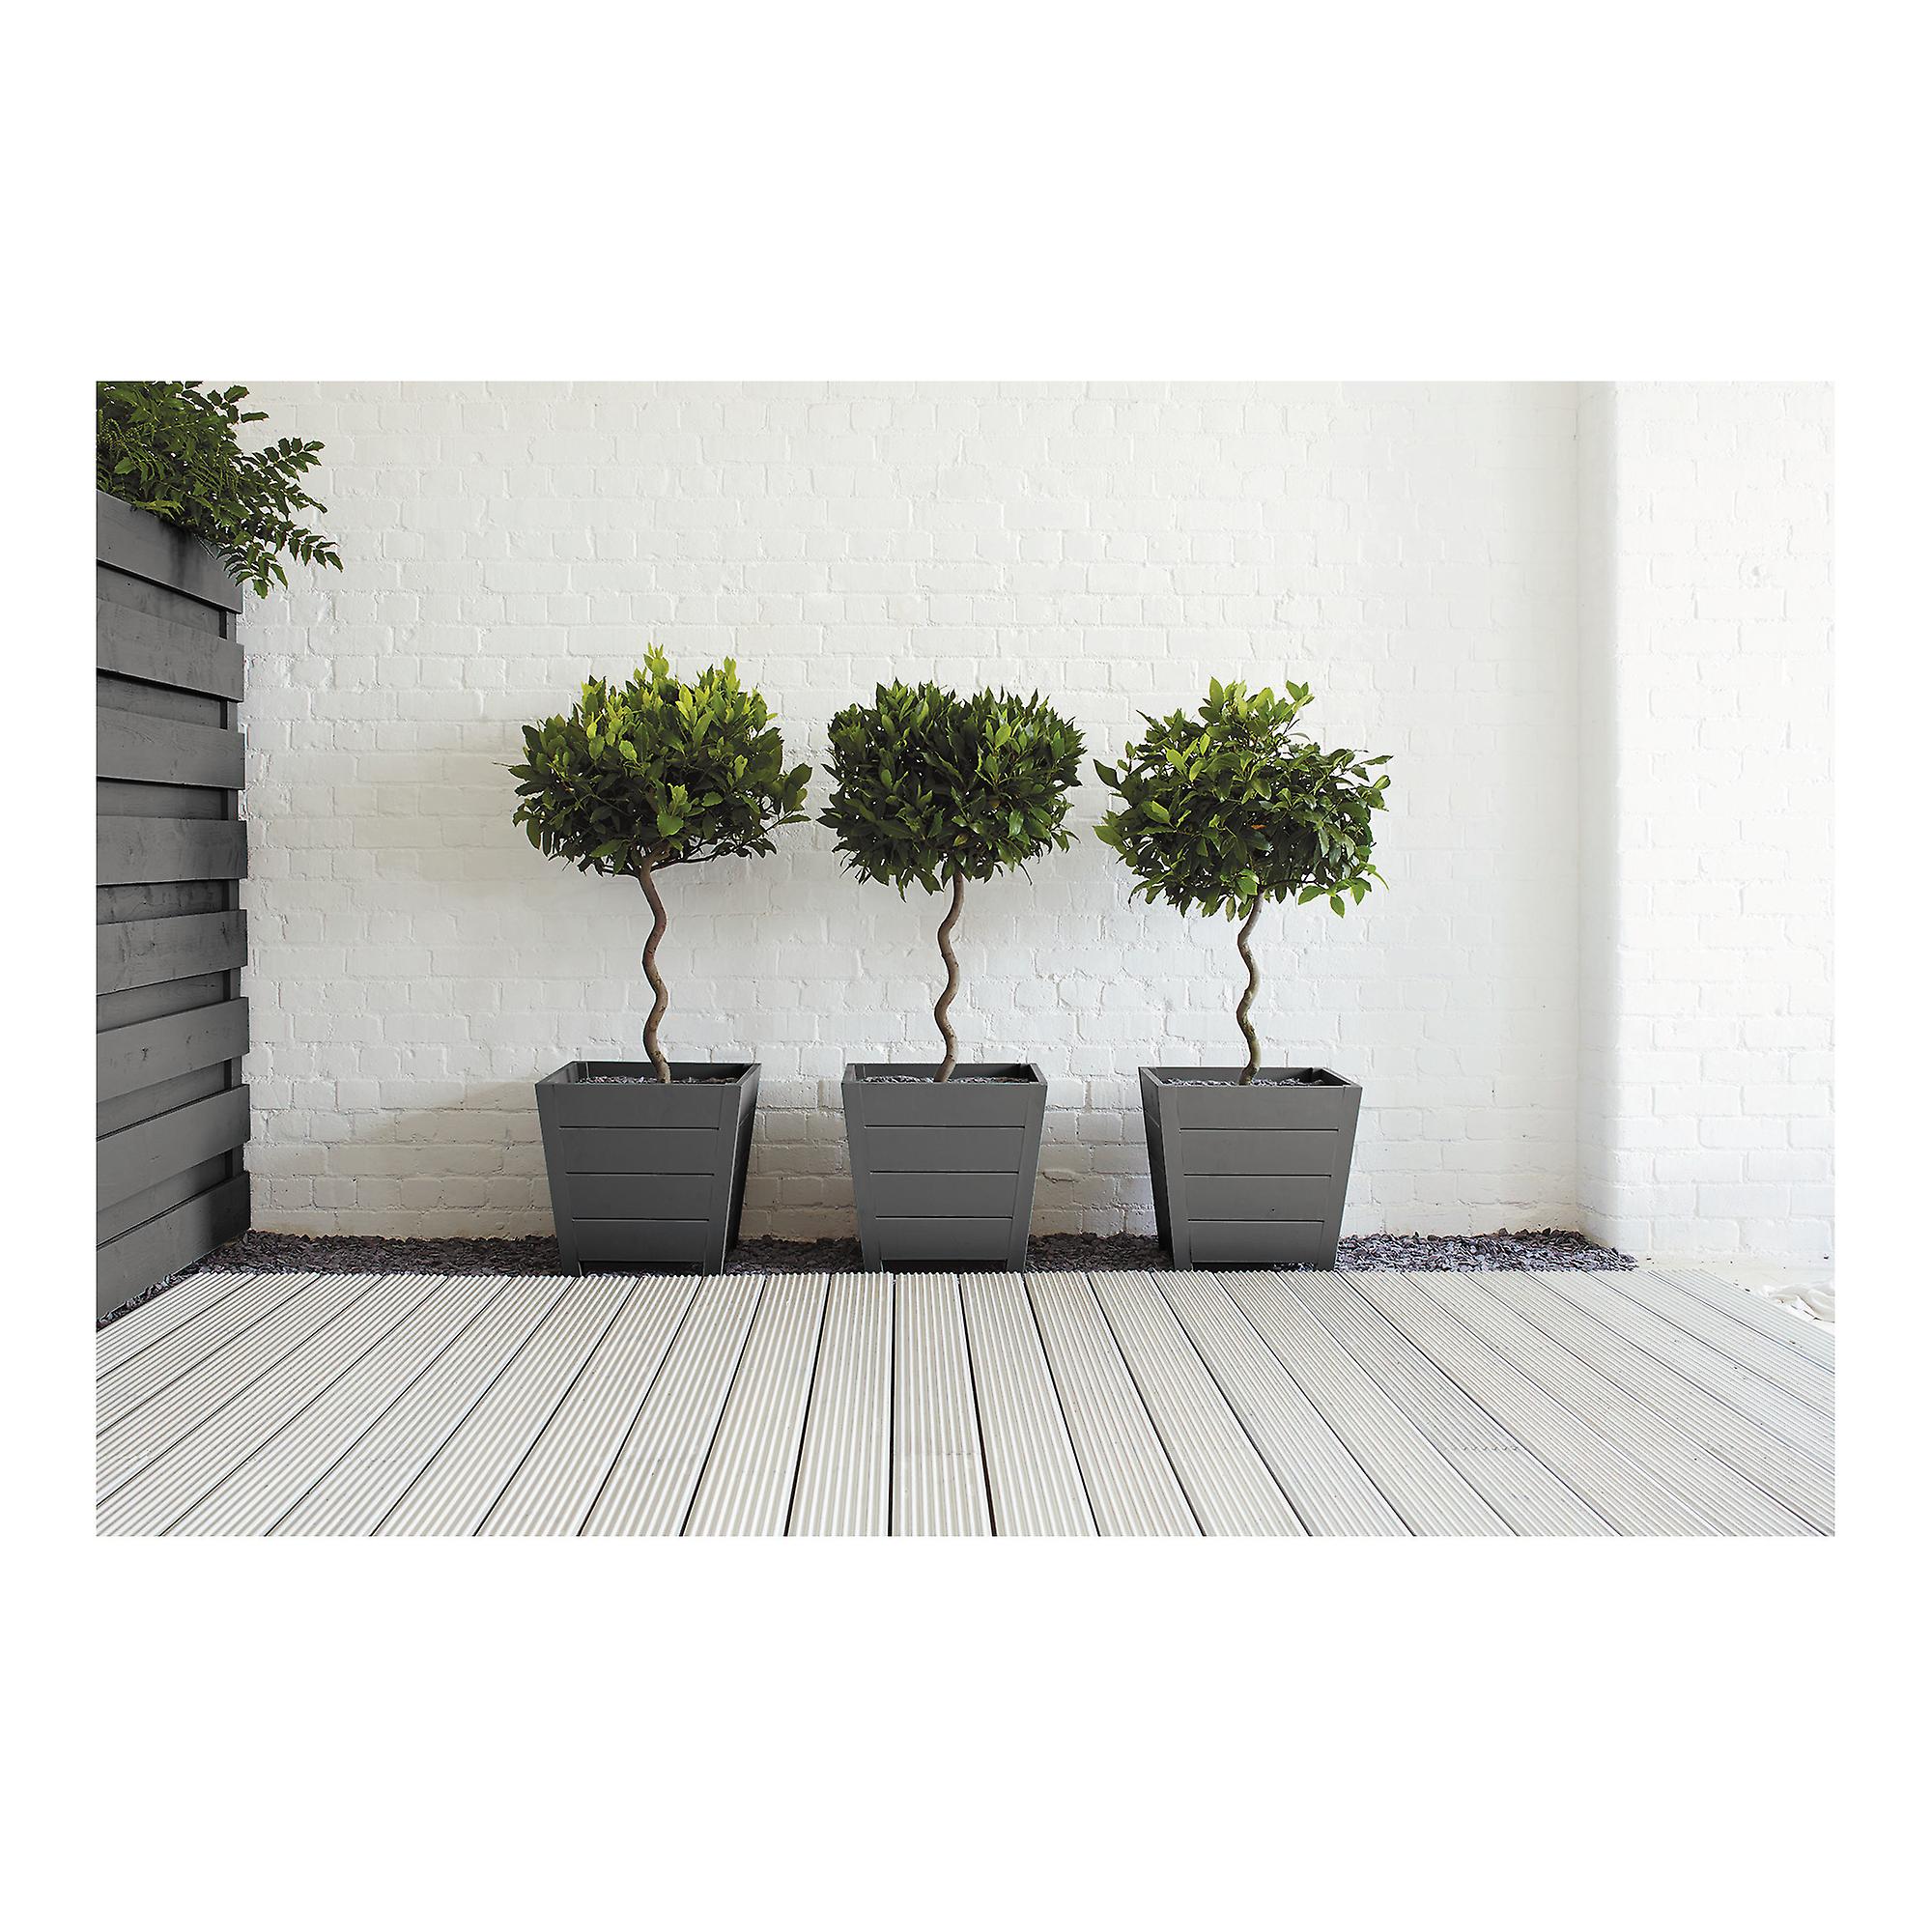 Ronseal Outdoor Garden Paint 750ml Charcoal Grey